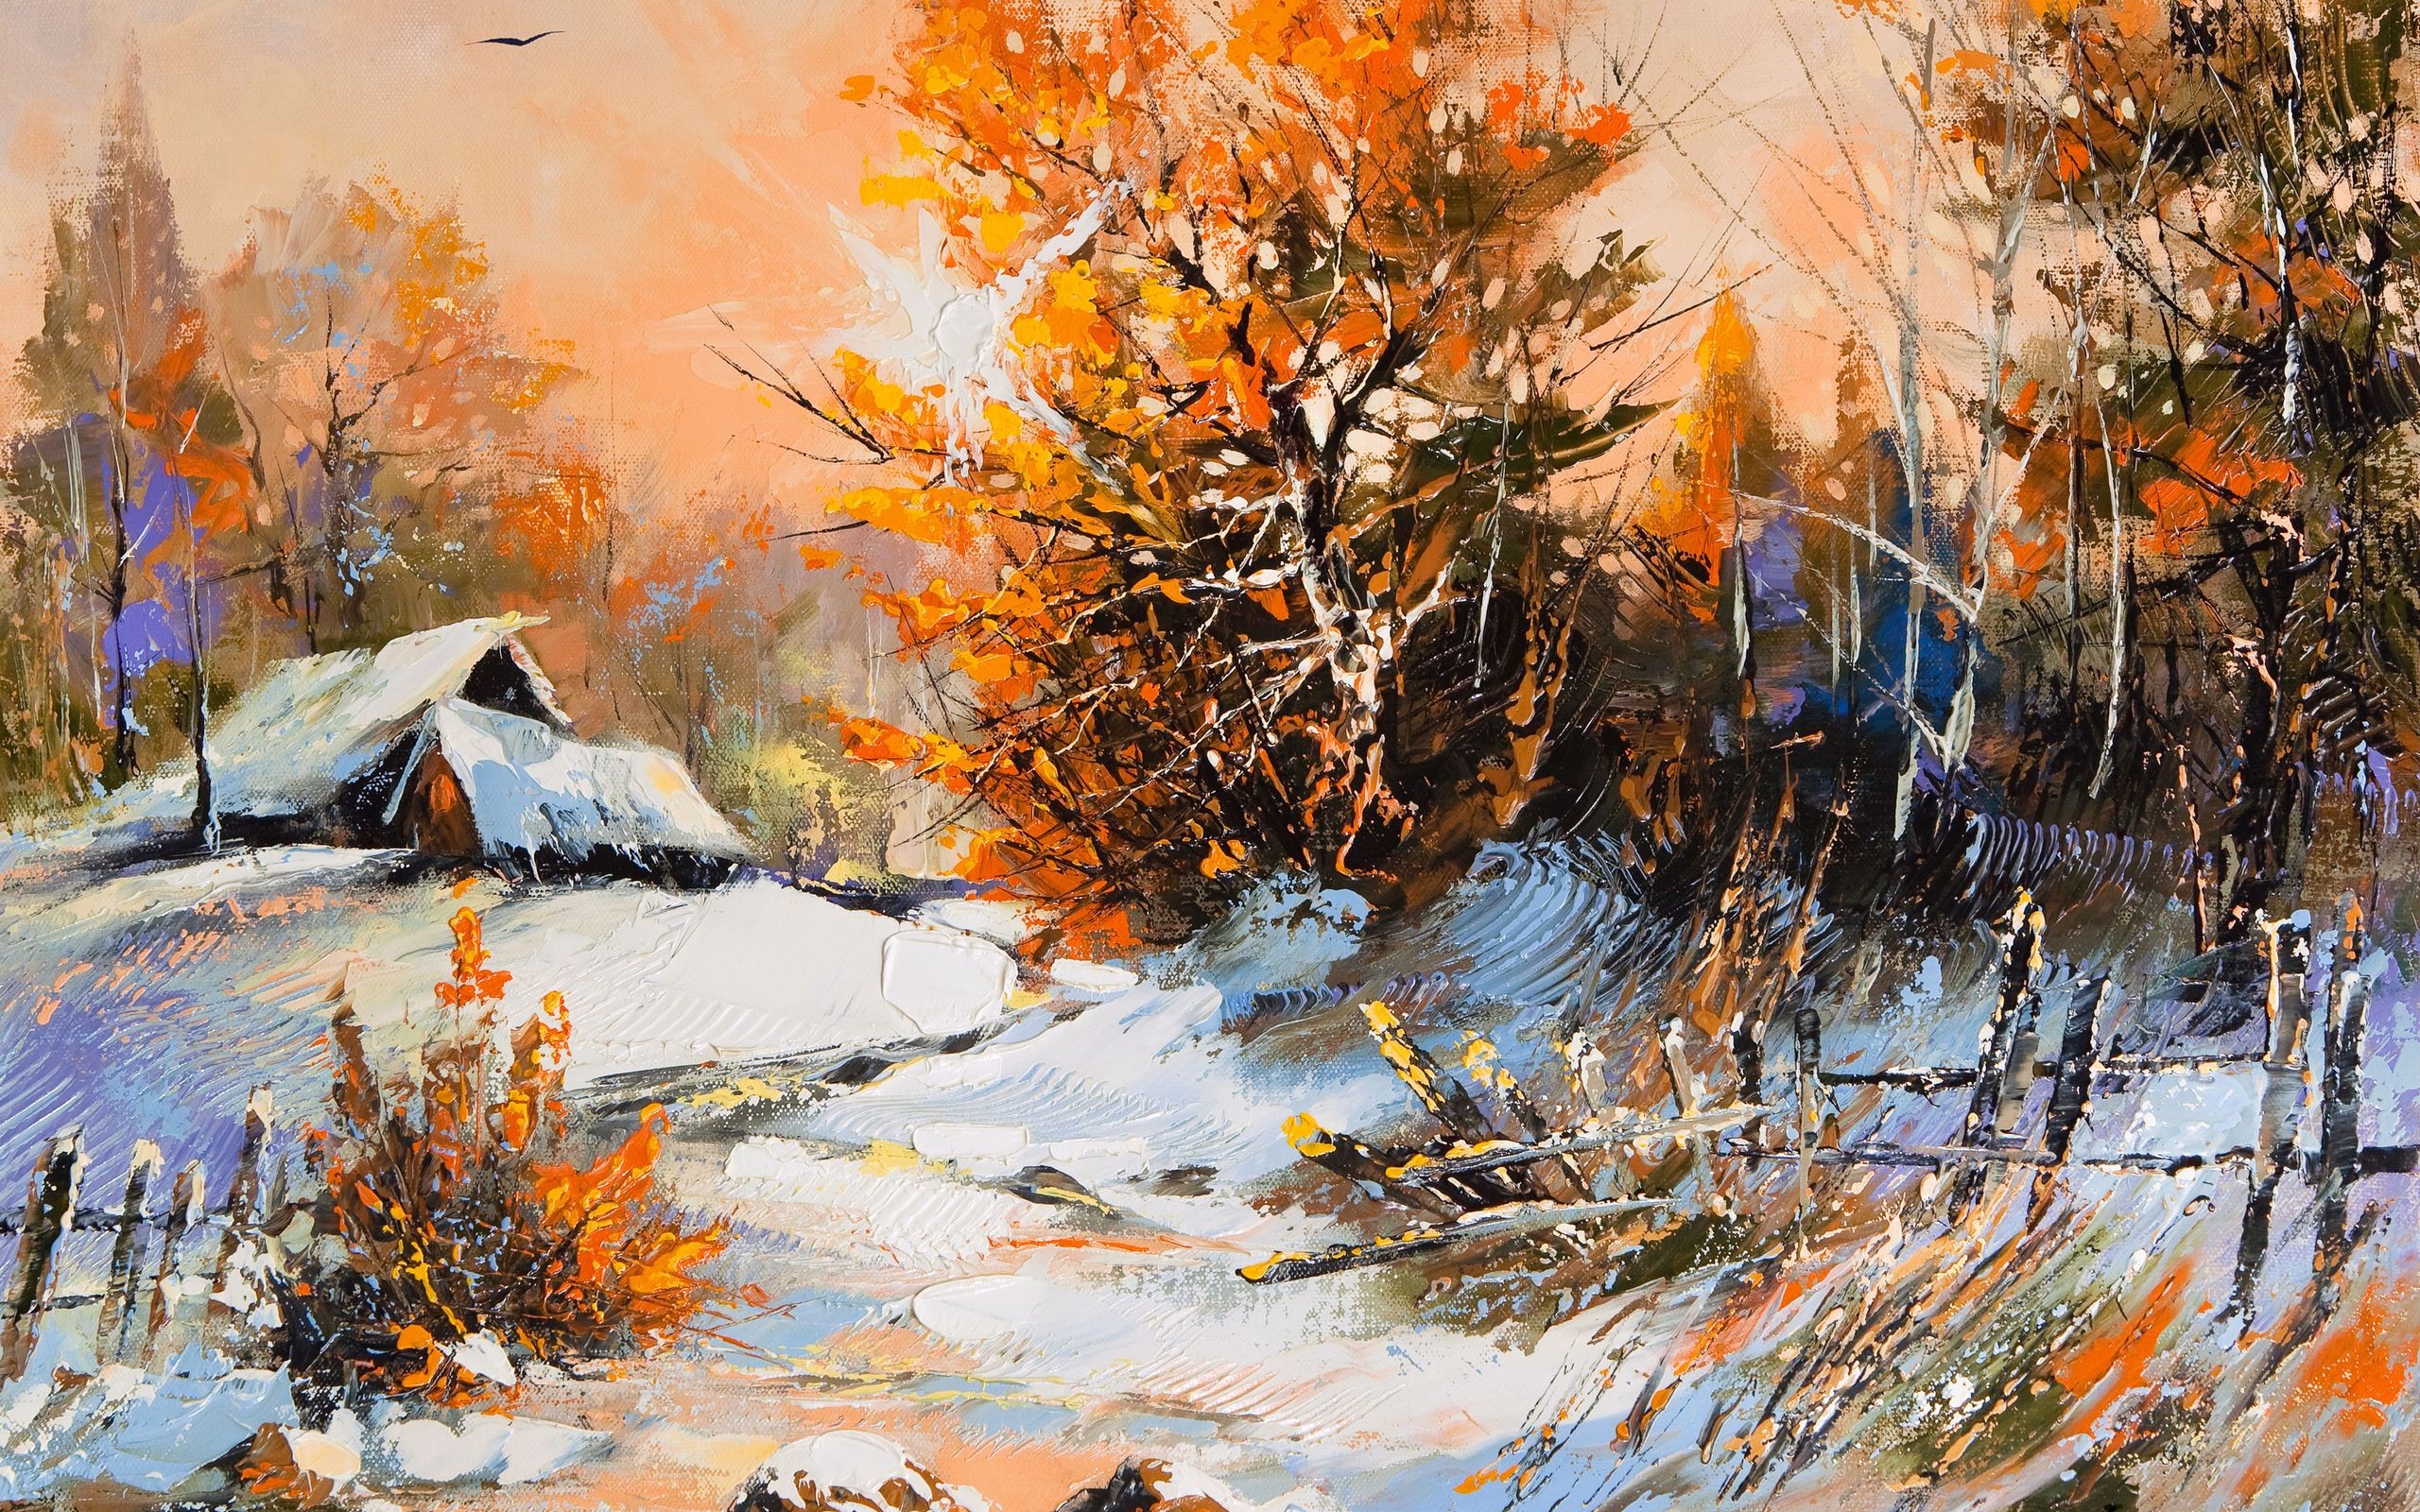 paintings-winter-artwork--1568038-2560x1600